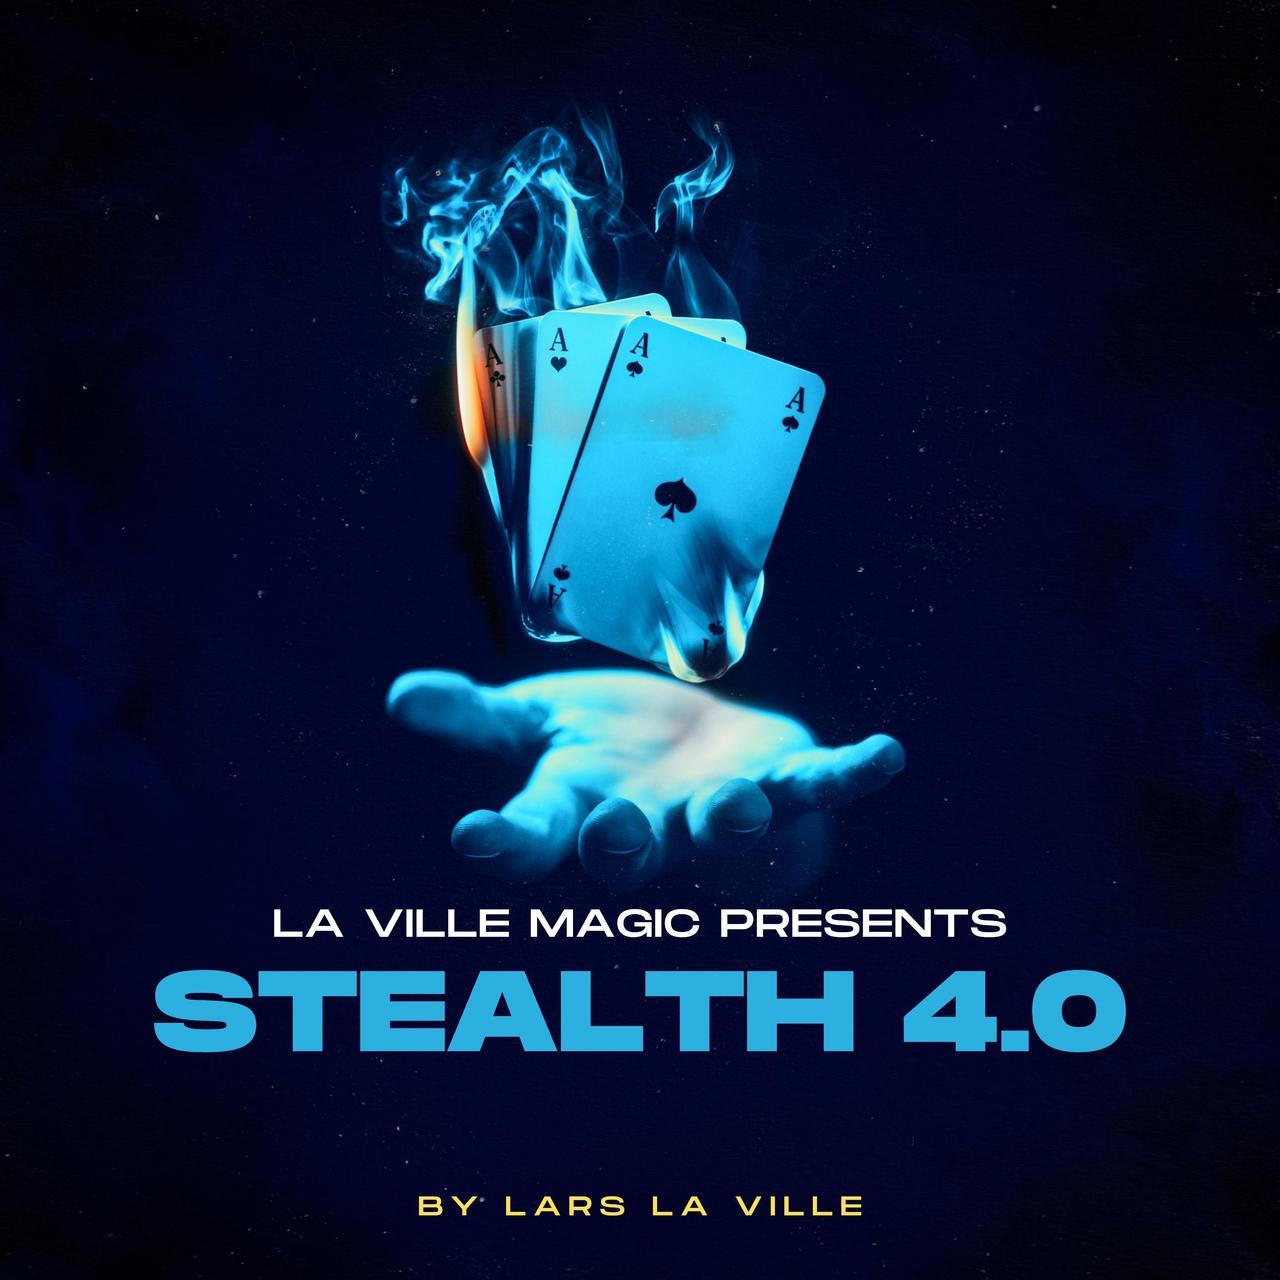 Lars La Ville (La Ville Magic) - Stealth 4.0